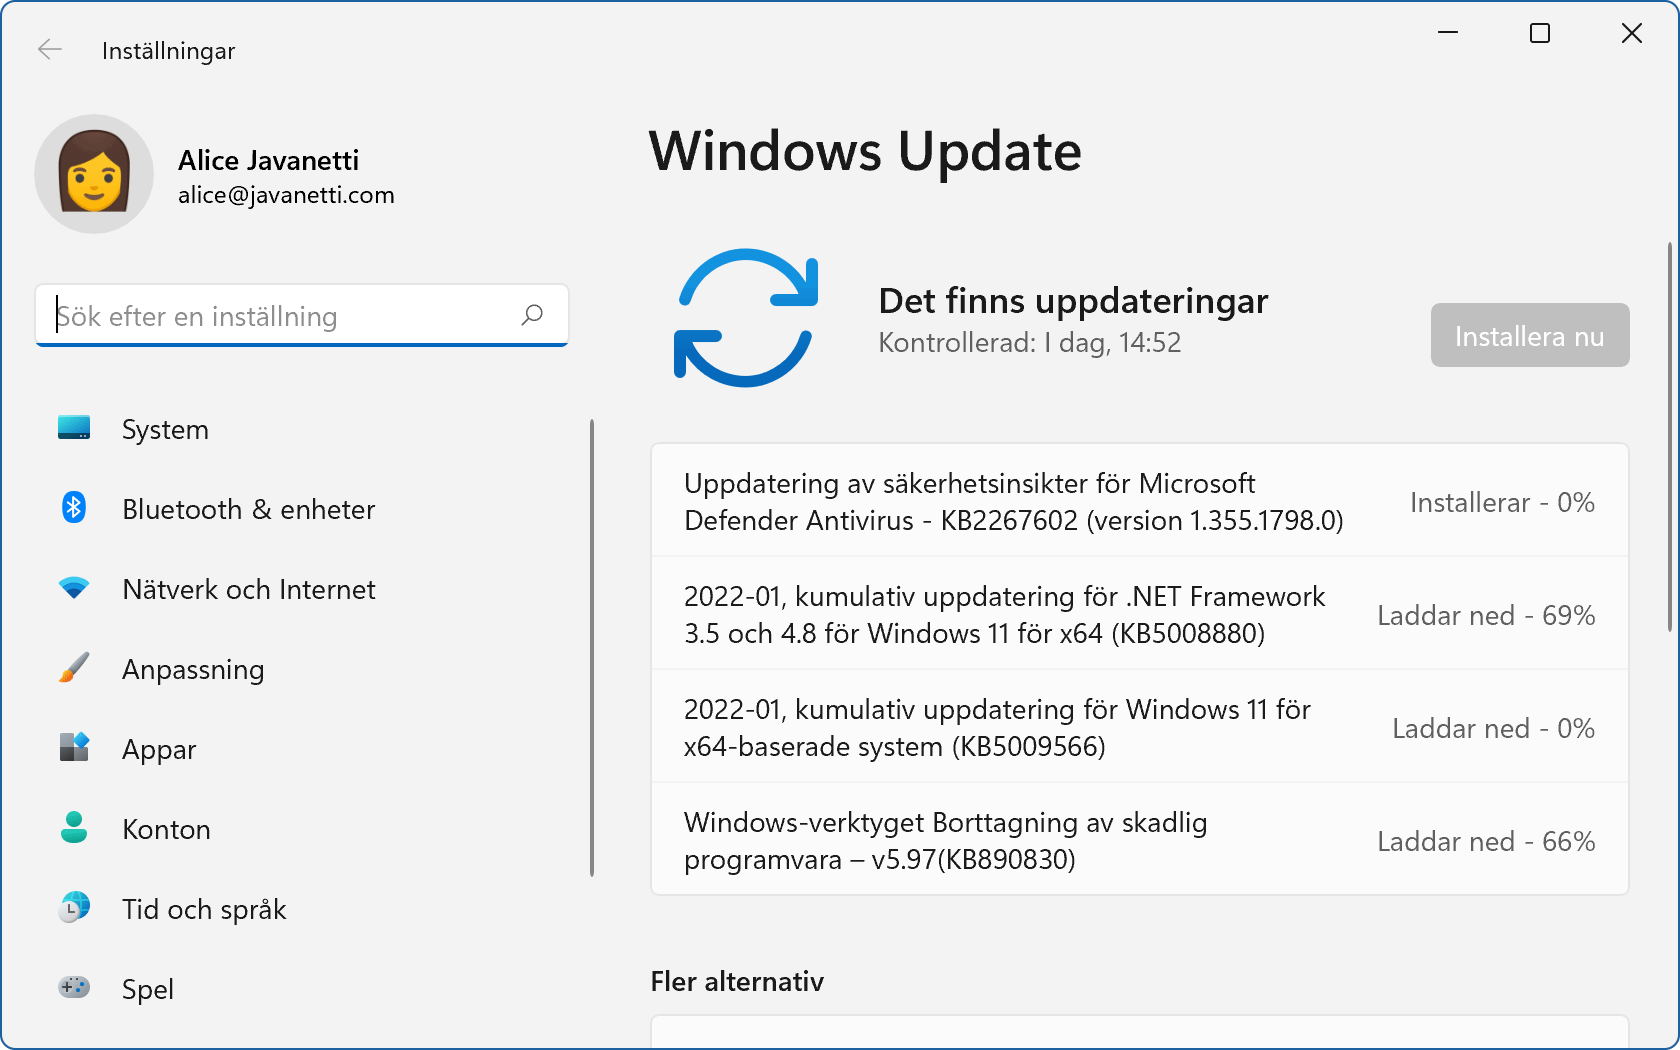 Windows Update installerar januaris säkerhetsuppdateringar.